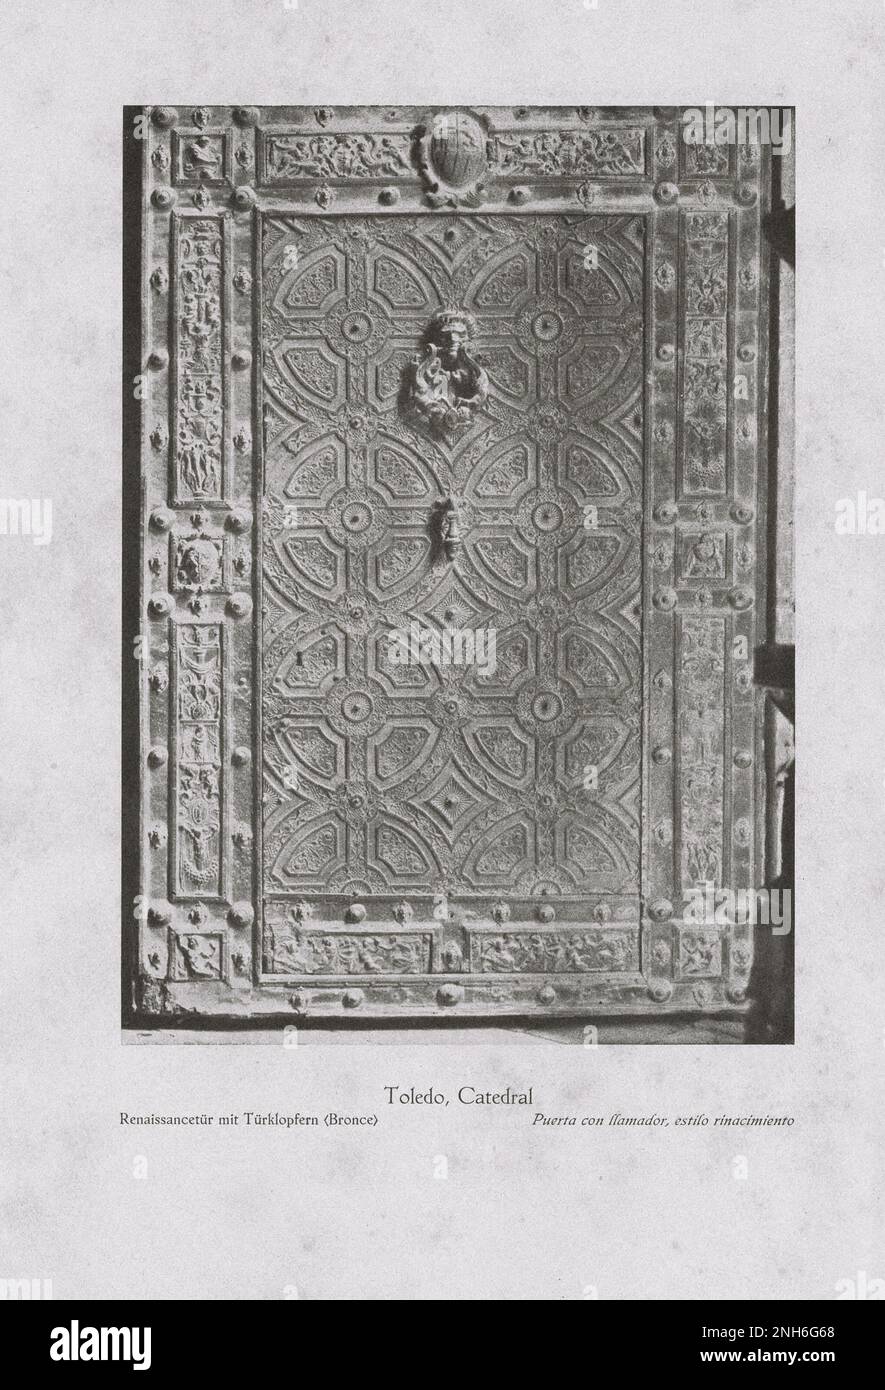 Kunst des alten Spaniens. Oldtimer-Foto der Kathedrale von Toledo. Tür im Renaissance-Stil mit Türklopfen (Bronze) Stockfoto